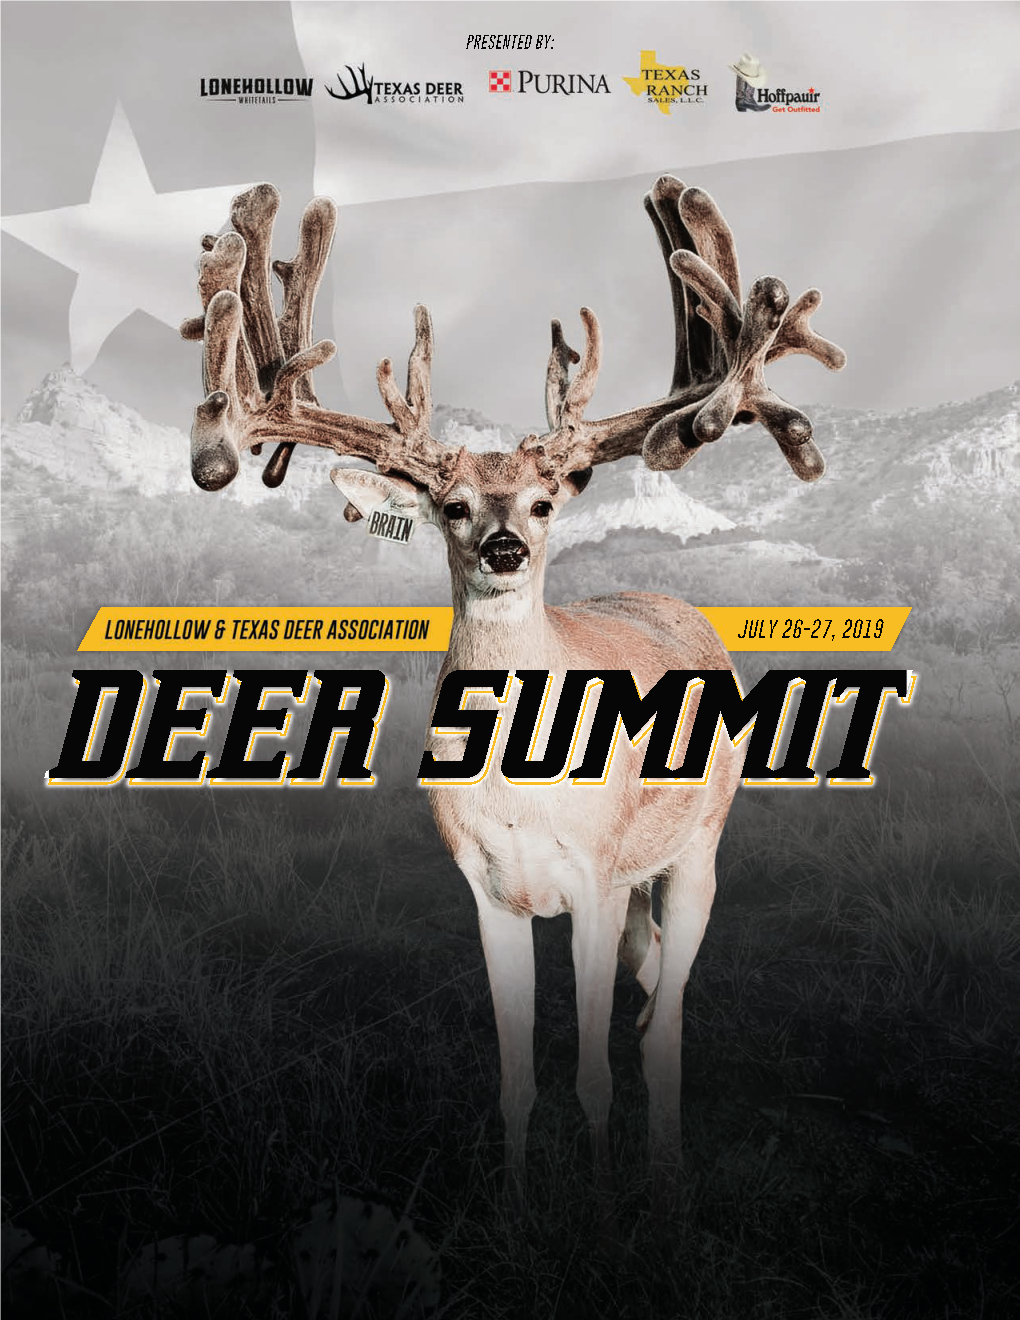 Lonehollow & Texas Deer Association Deer Summit